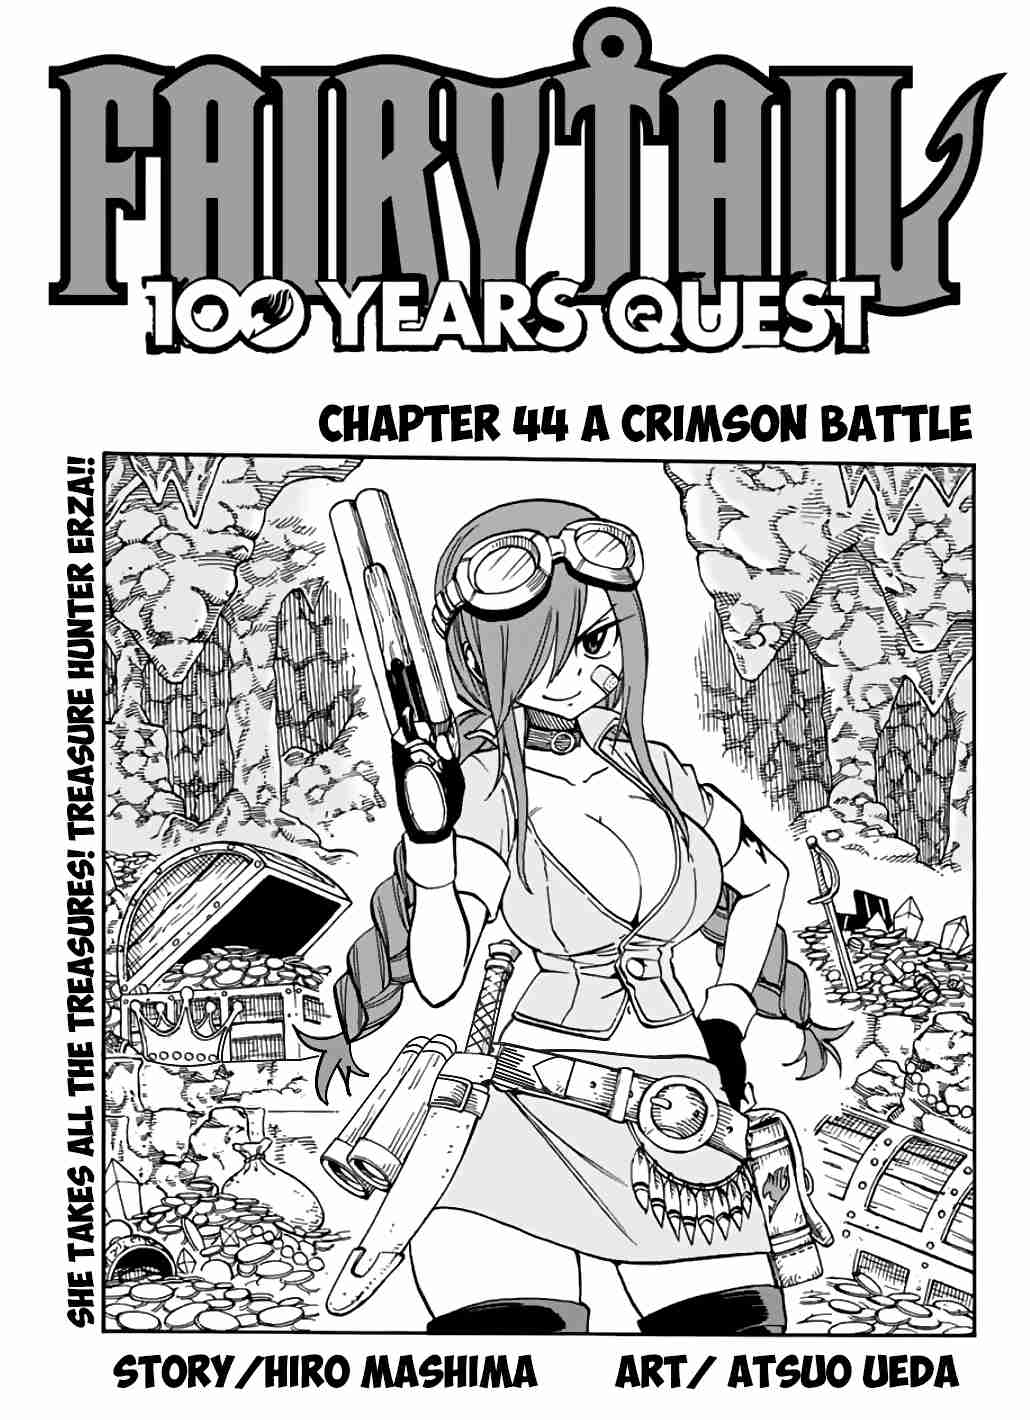 Fairy Tail: 100 Years Quest Ch. 44 A Crimson Battle